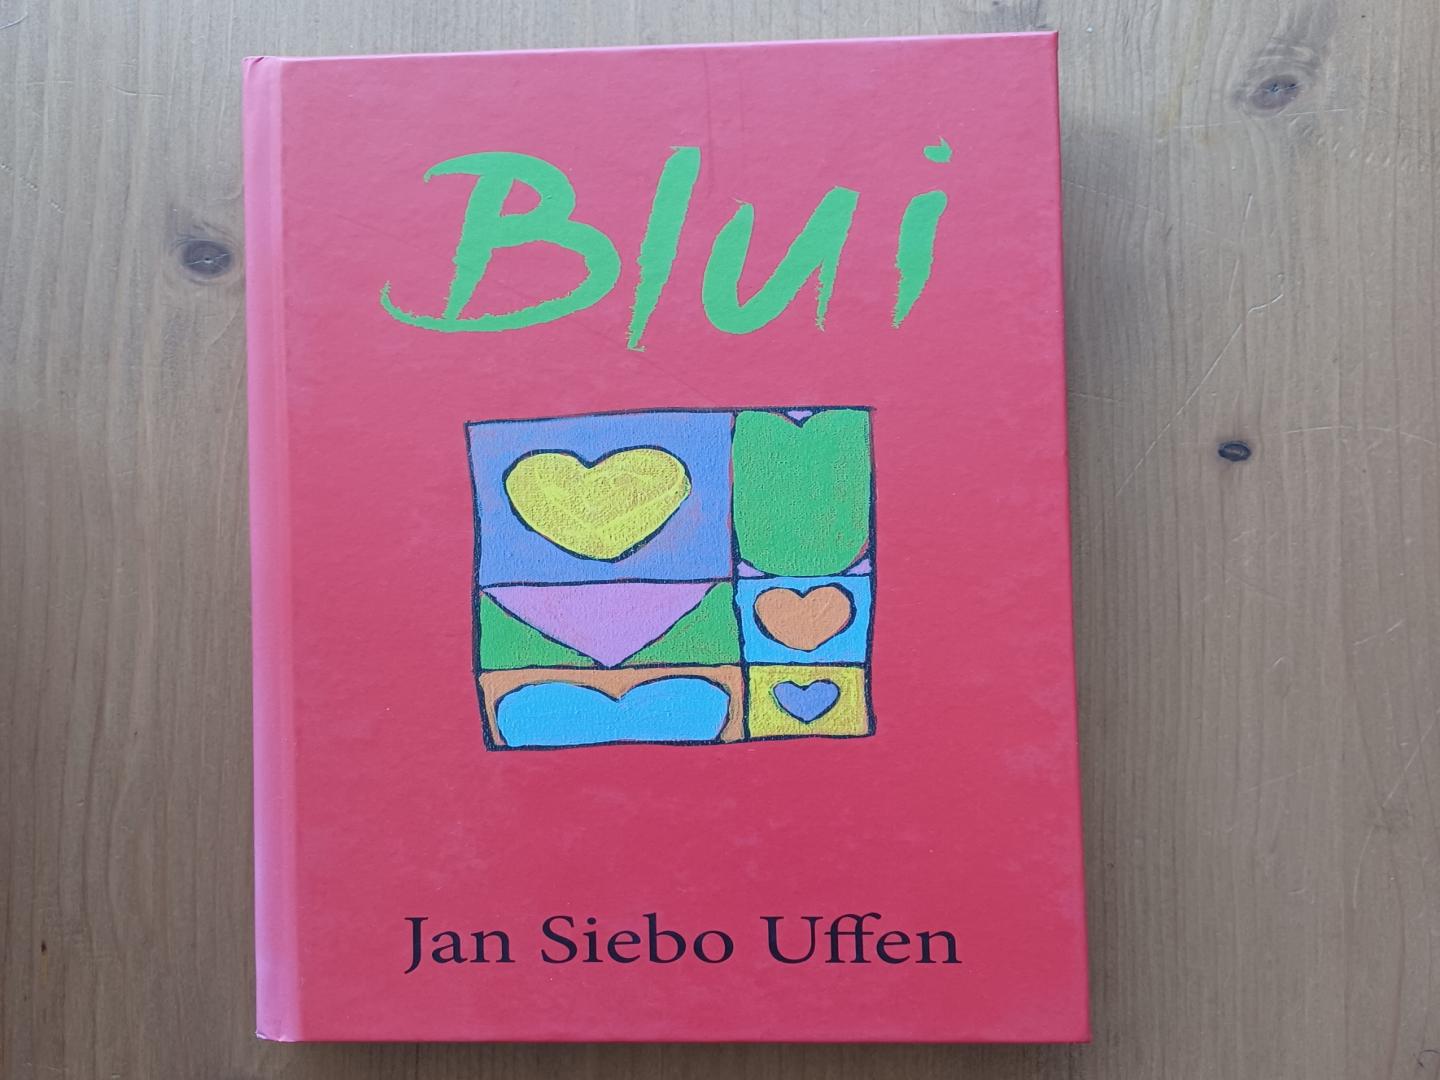 Uffen, Jan Siebo - Blui